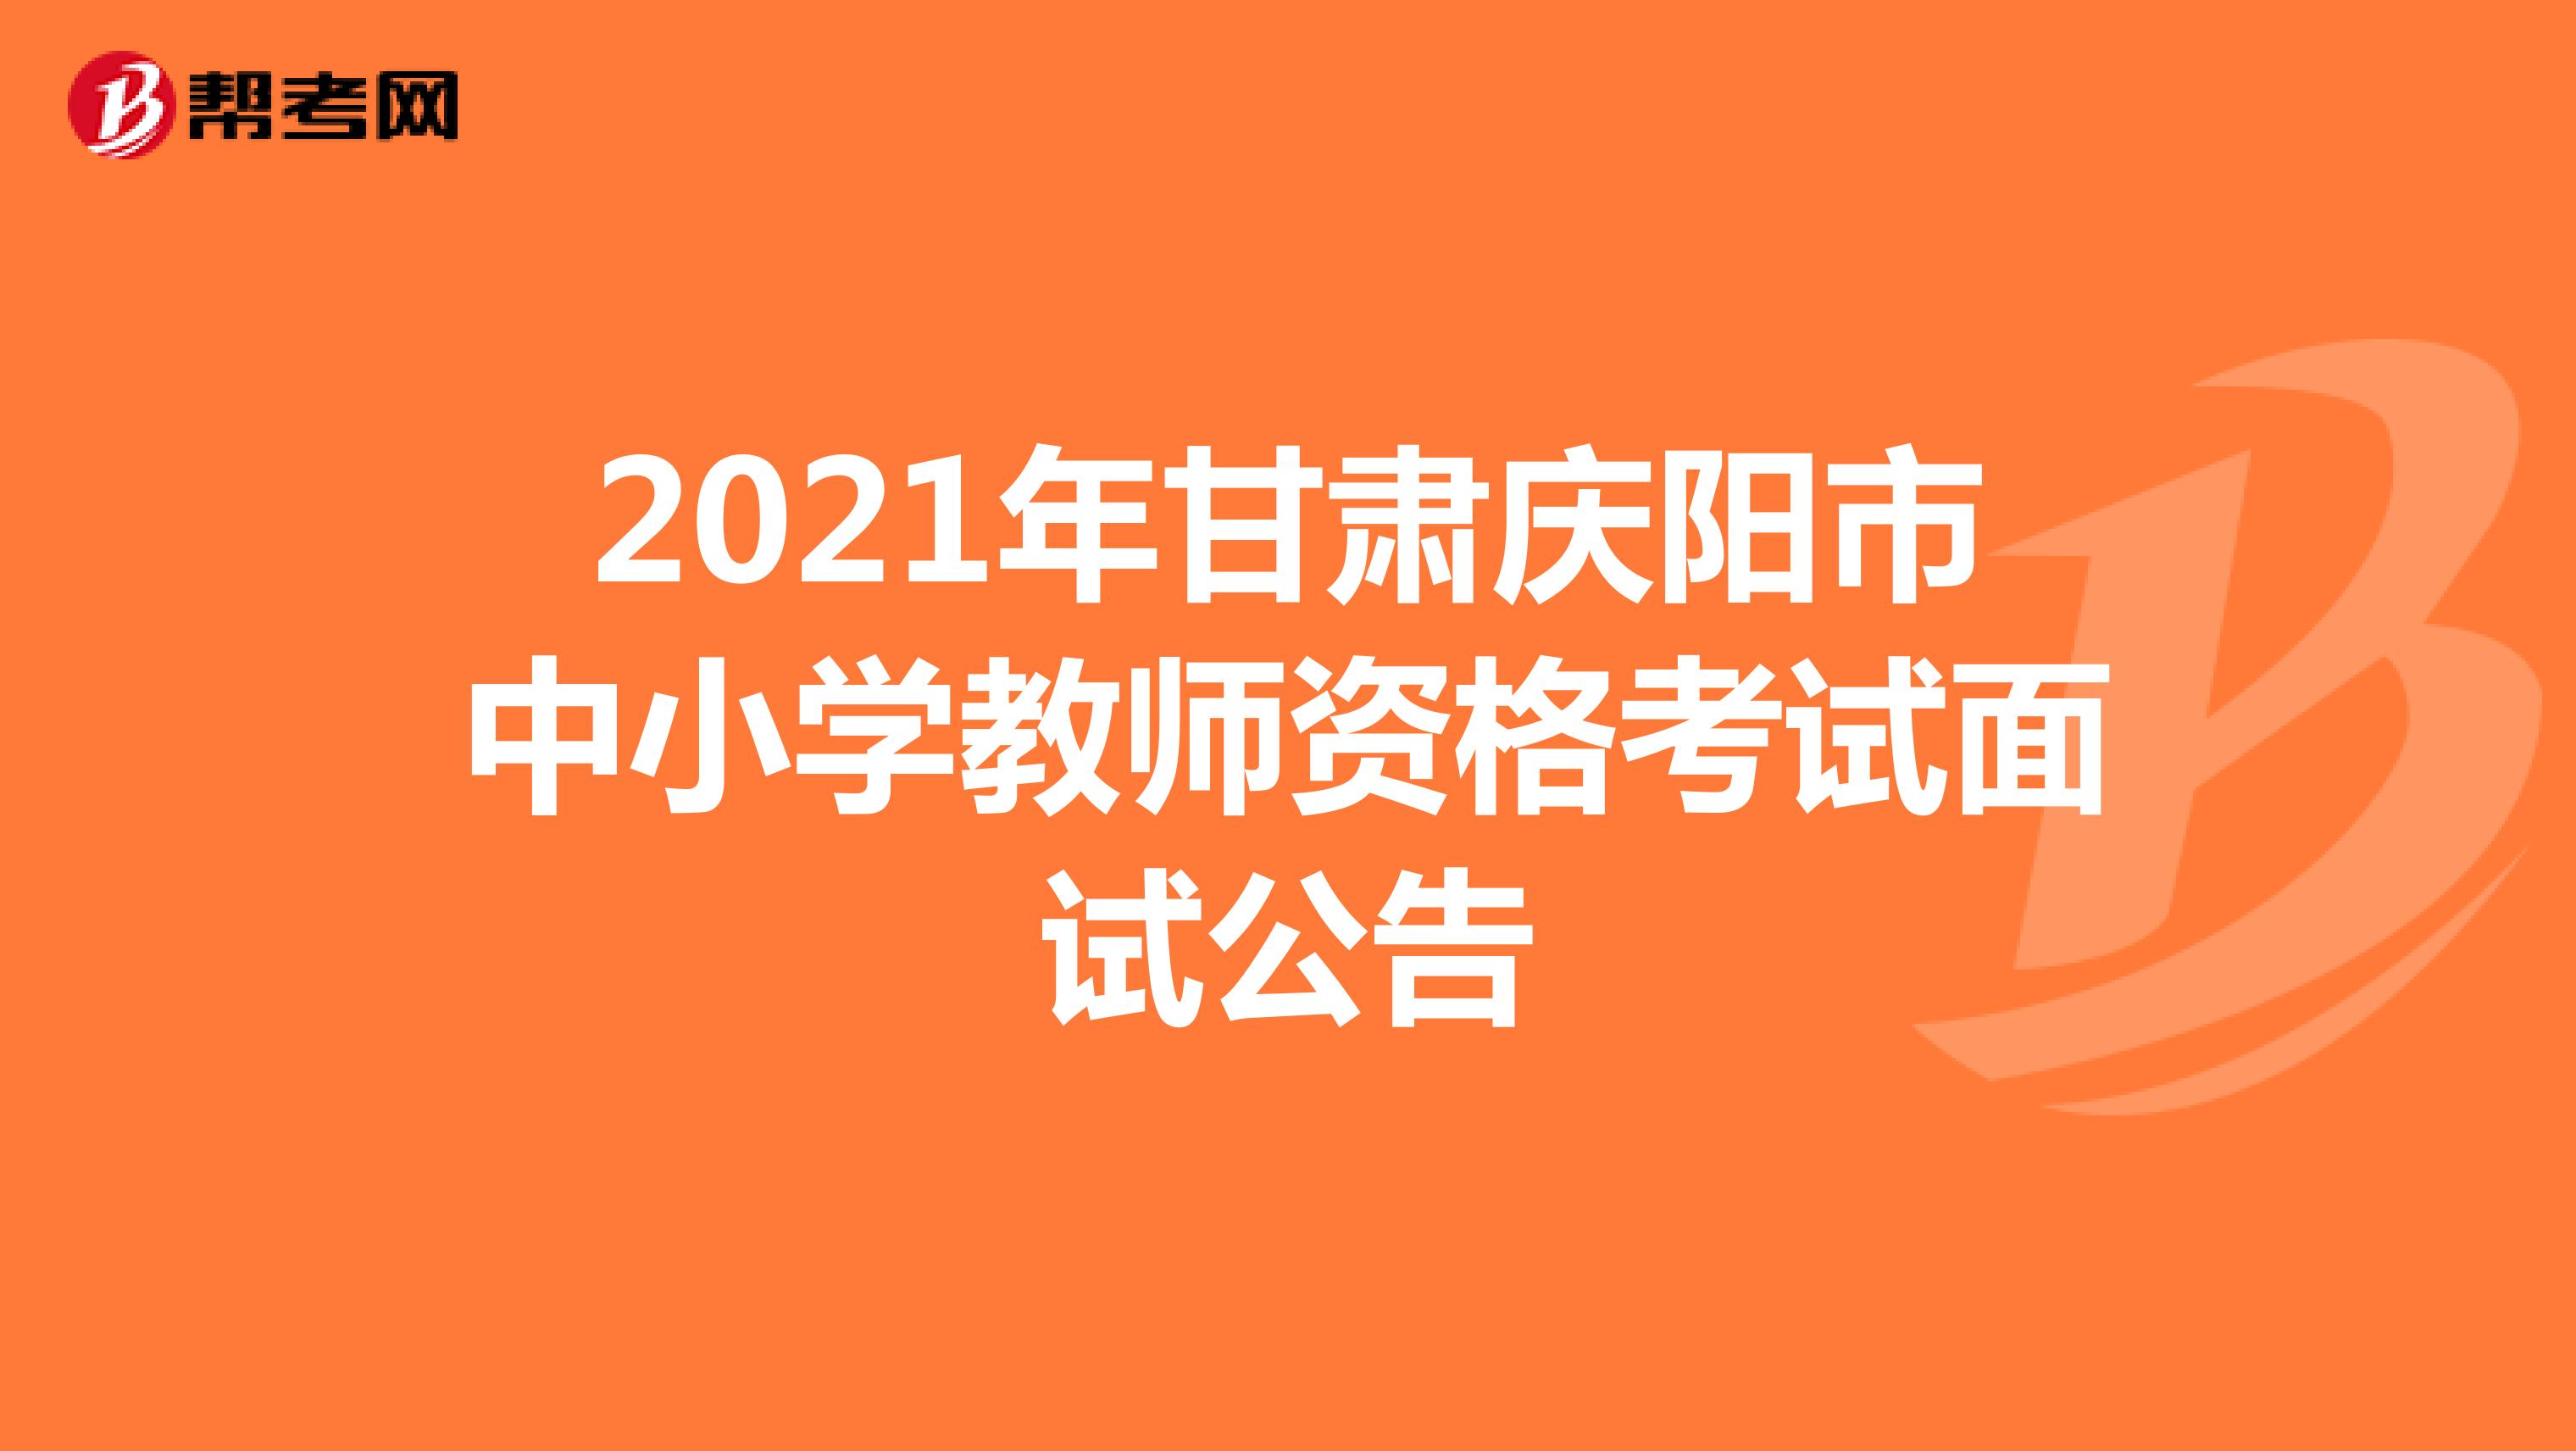 2021年甘肃庆阳市中小学教师资格考试面试公告